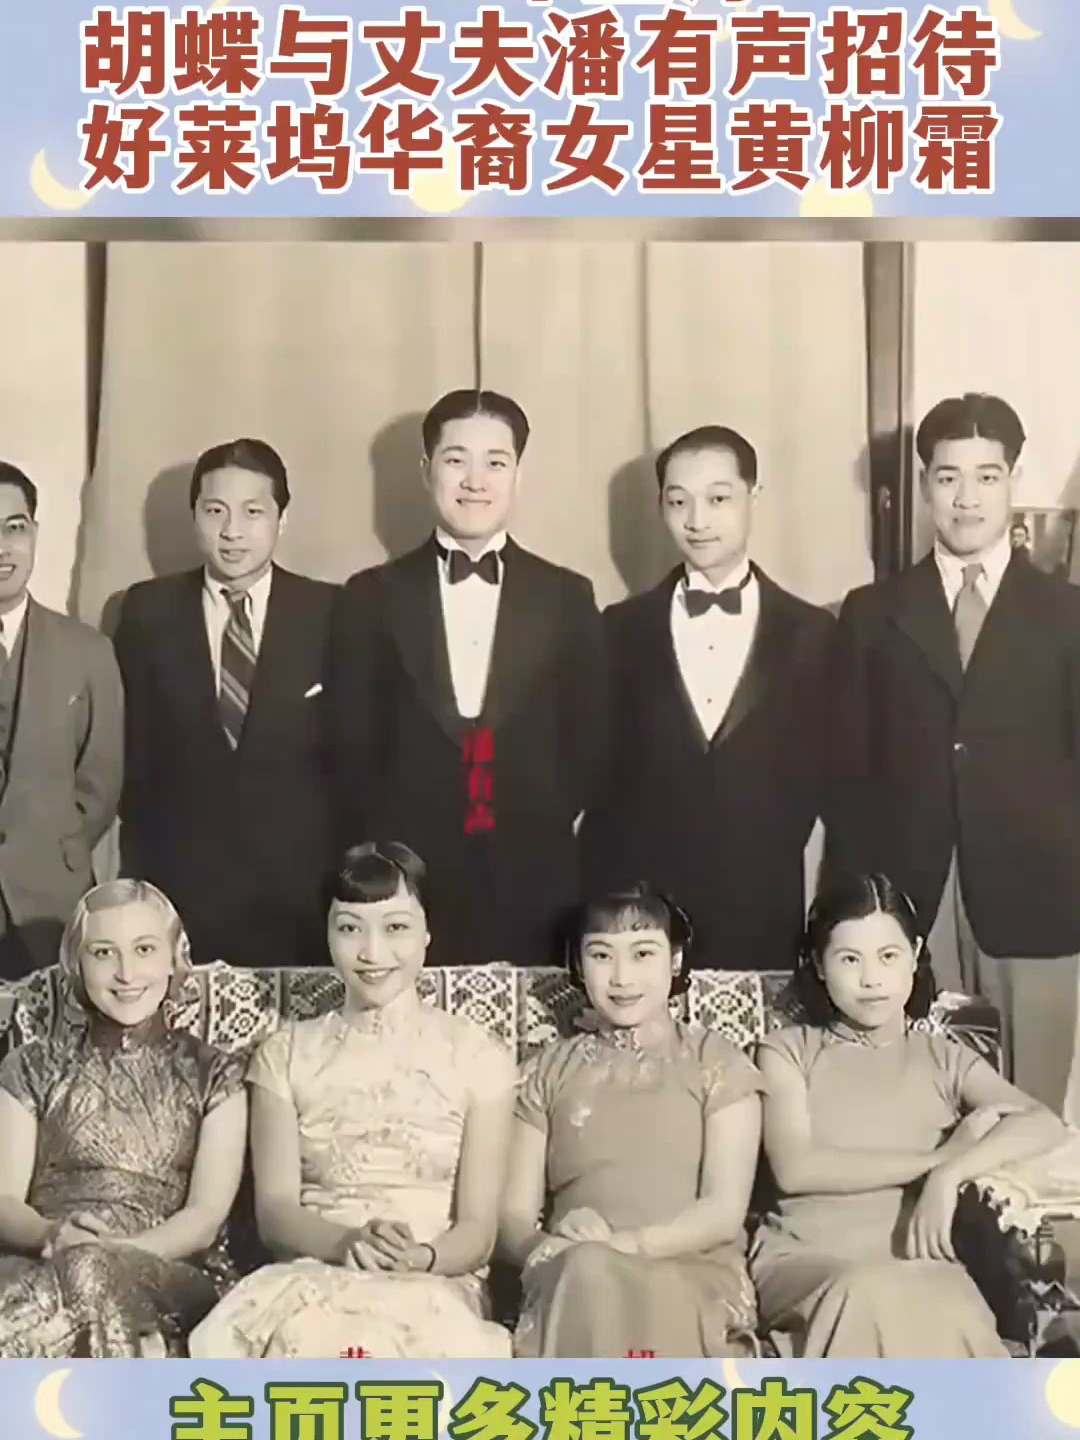 1936年上海,胡蝶与丈夫潘有声招待好莱坞华裔女星黄柳霜时的合影